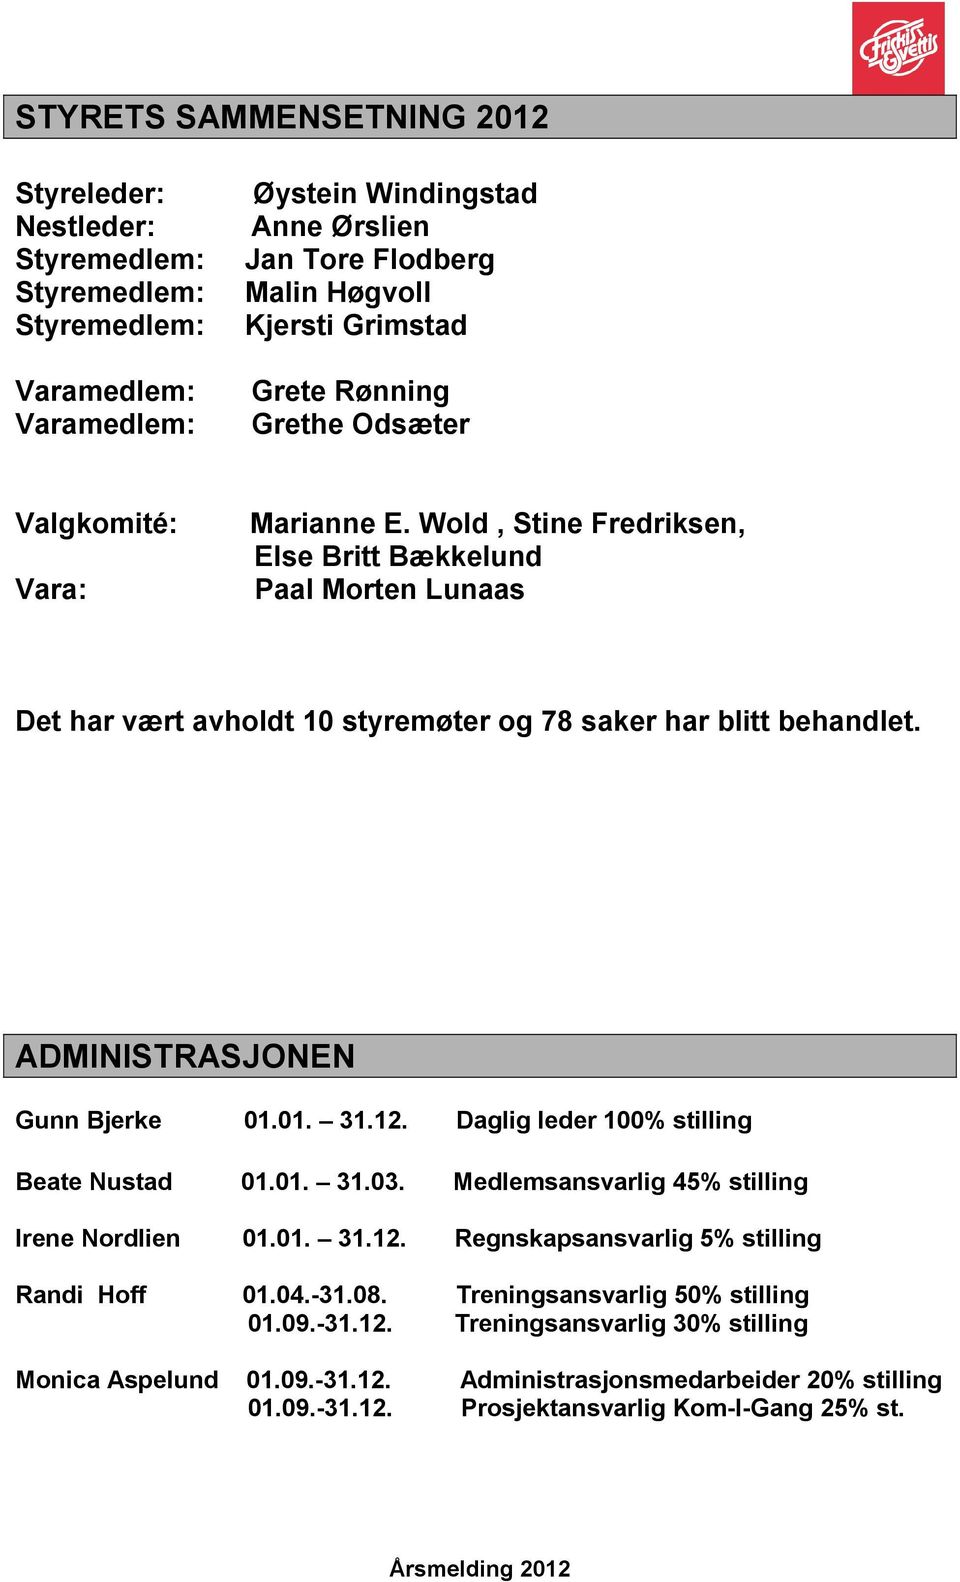 ADMINISTRASJONEN Gunn Bjerke 01.01. 31.12. Daglig leder 100% stilling Beate Nustad 01.01. 31.03. Medlemsansvarlig 45% stilling Irene Nordlien 01.01. 31.12. Regnskapsansvarlig 5% stilling Randi Hoff 01.